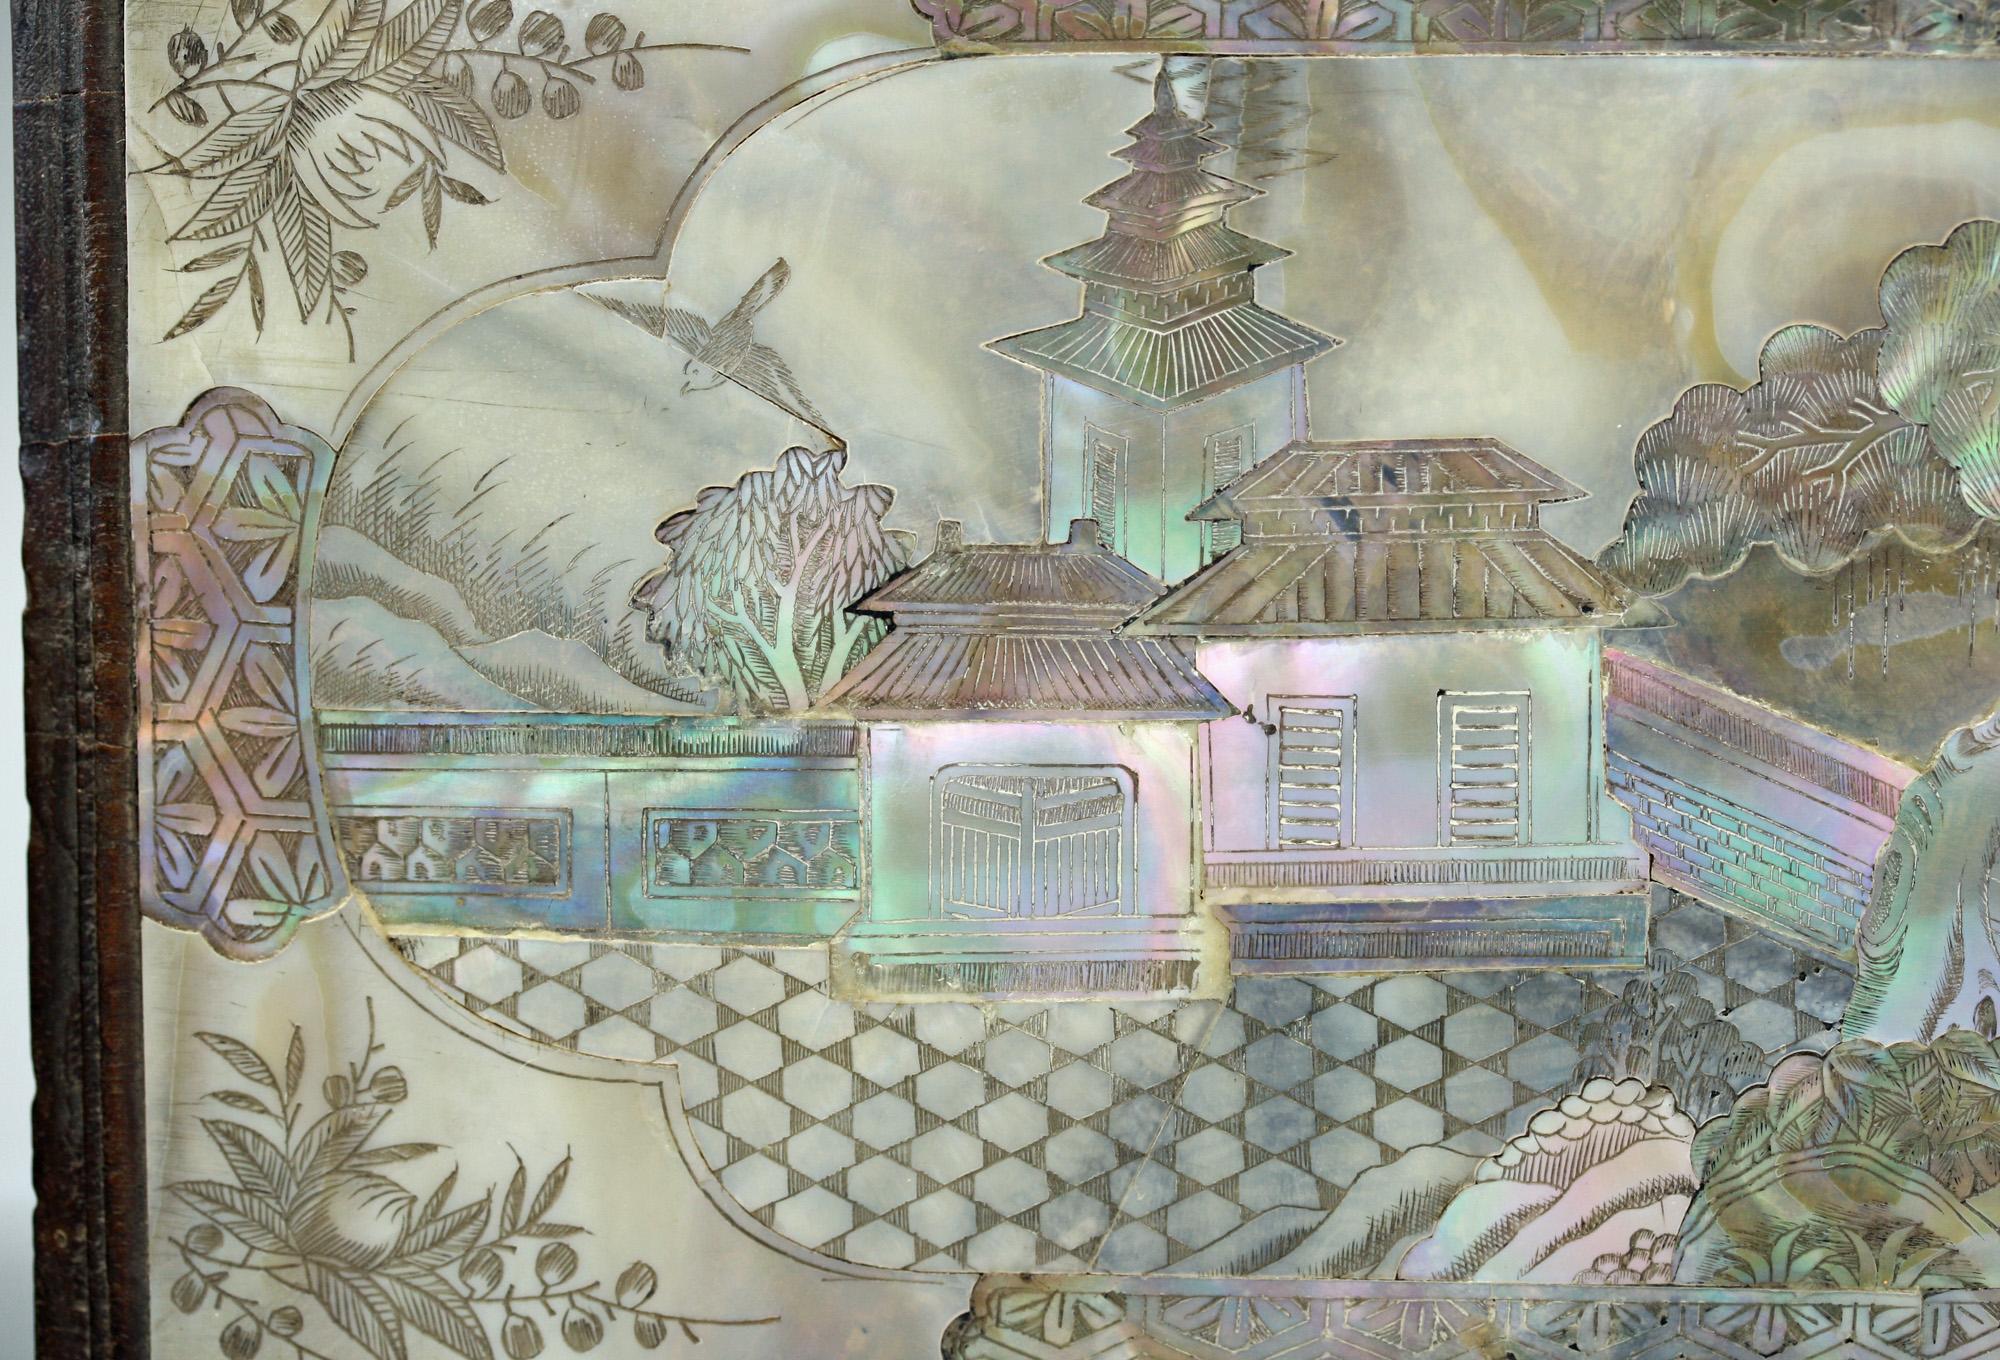 Boîte à gants chinoise en bois de belle qualité, ornée de panneaux décoratifs en nacre, datant du XIXe siècle ou peut-être de la fin du XVIIIe siècle. La boîte rectangulaire à manchon présente des panneaux encastrés de chaque côté, constitués d'un